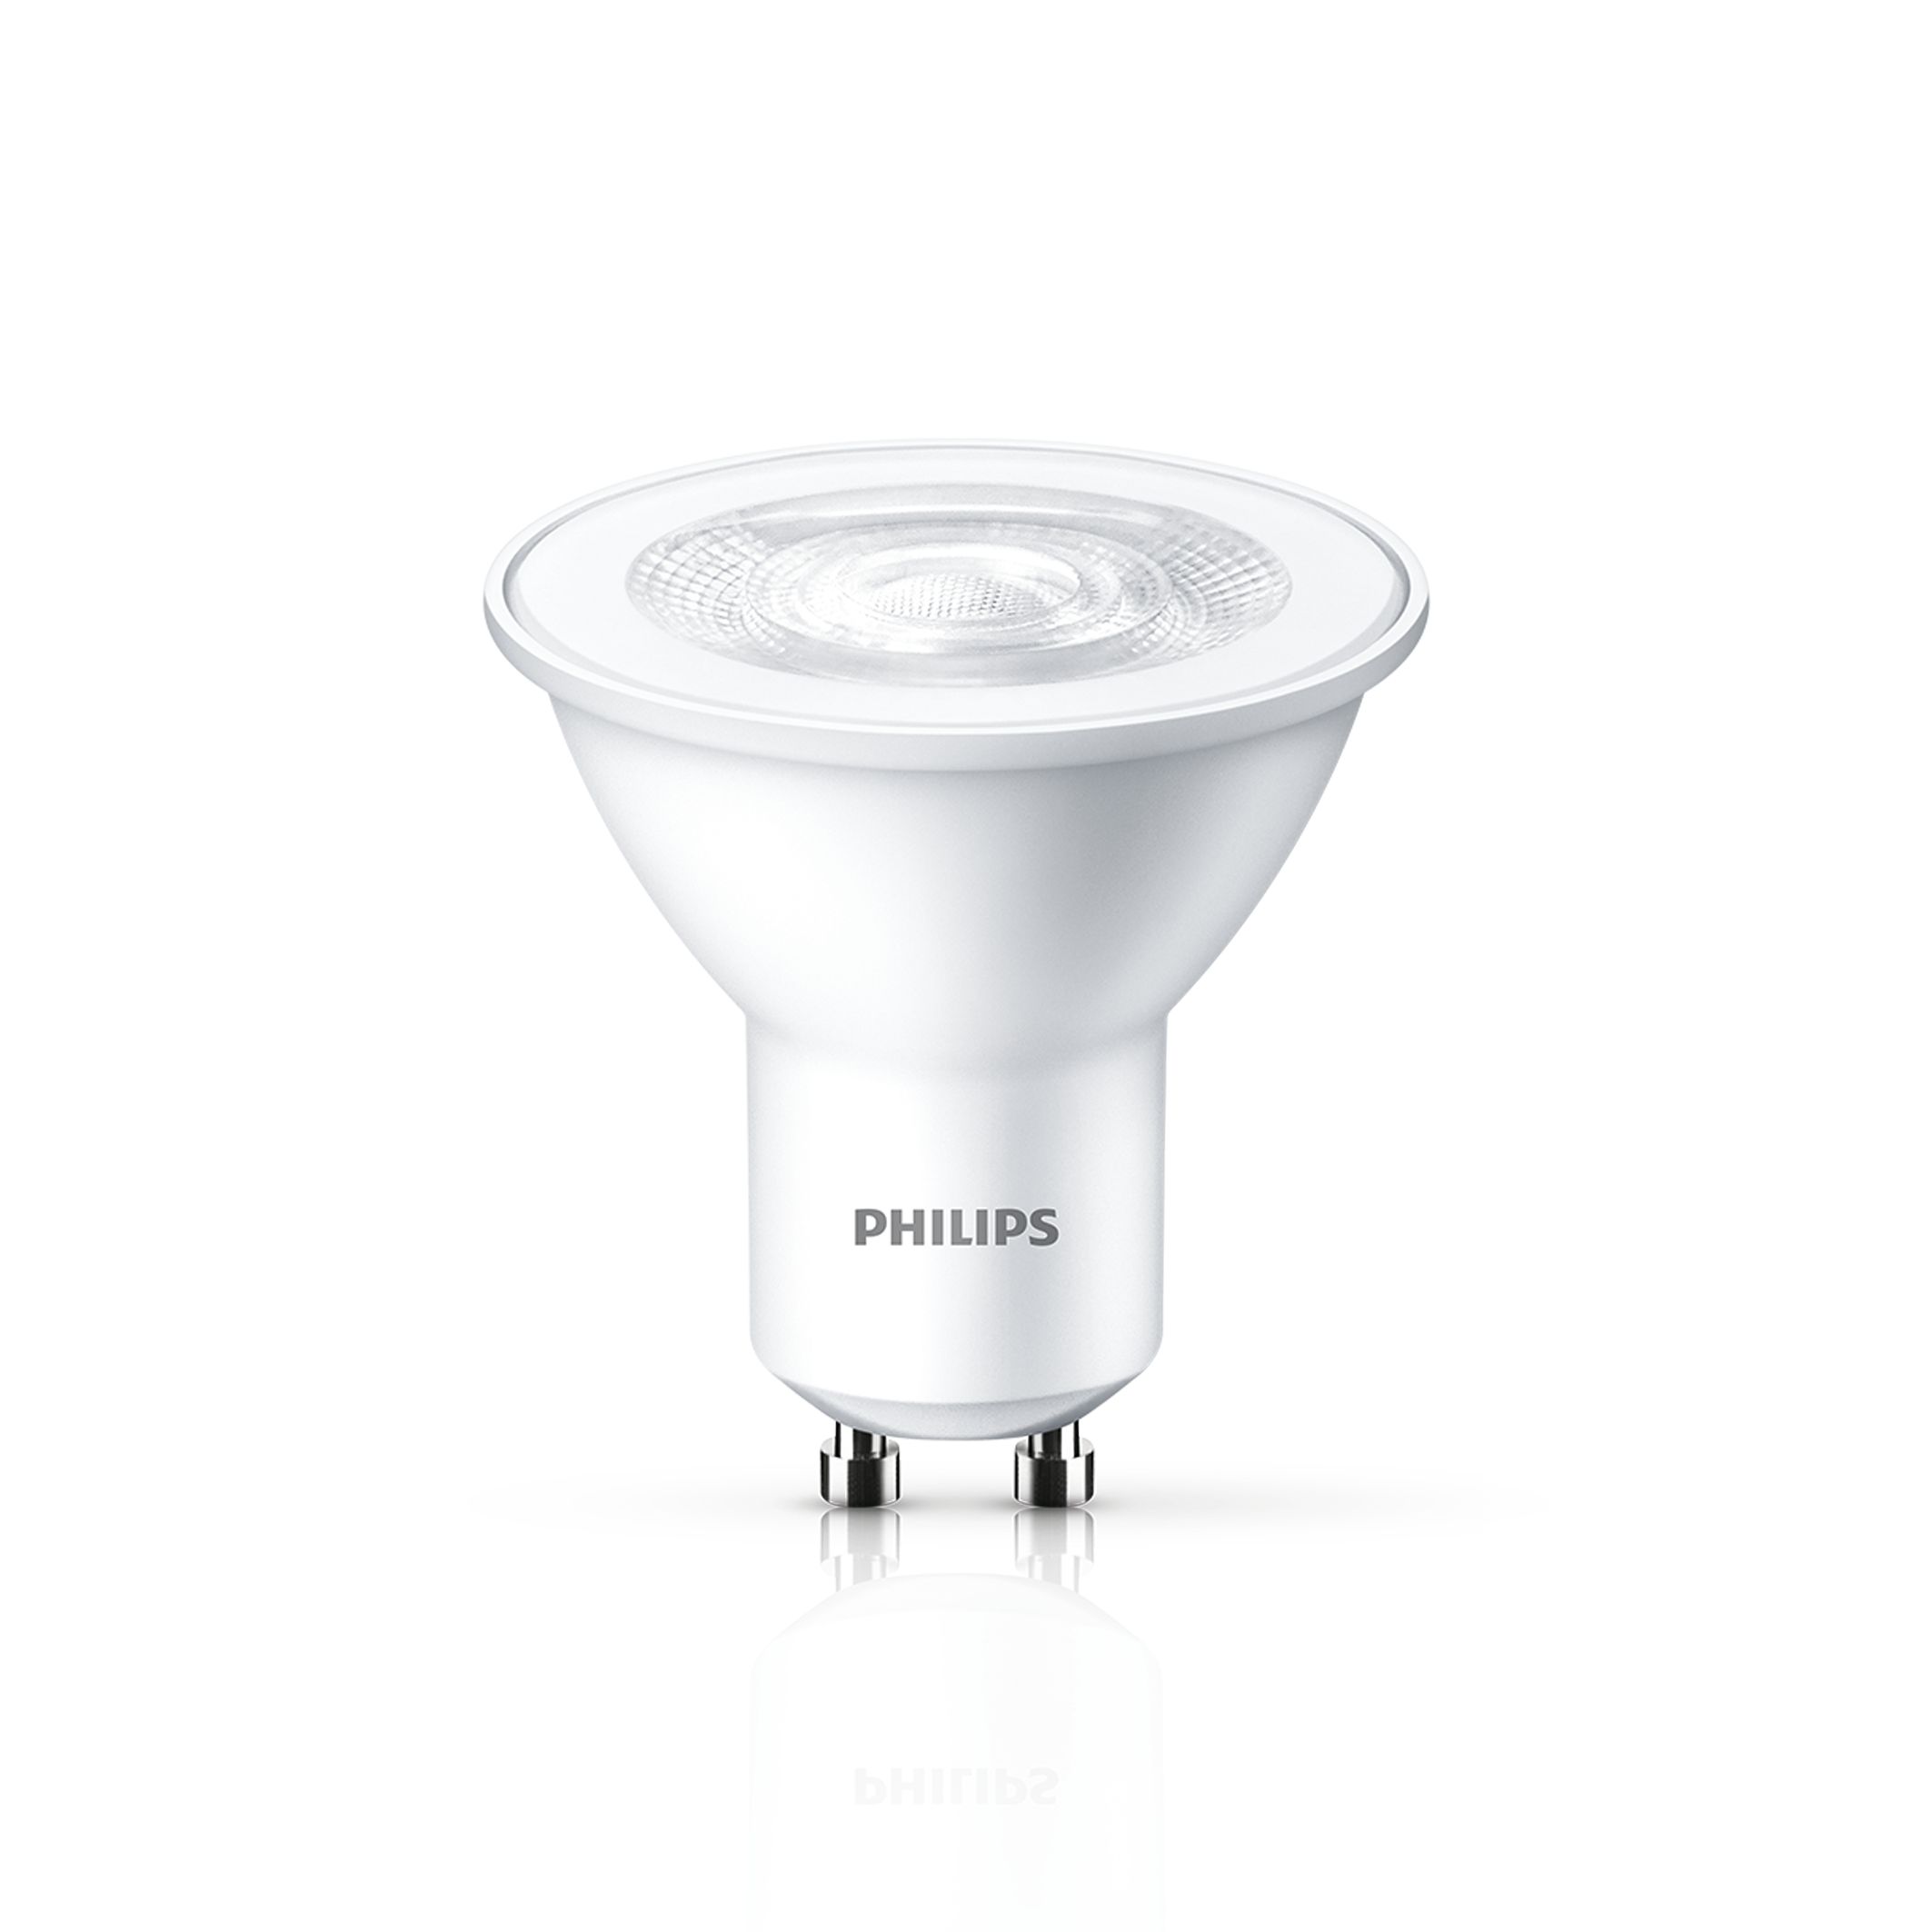 PHILIPS LOT DE 7 LED 3000K GU10 Spot 5W / 50W 360 lumen ampoule